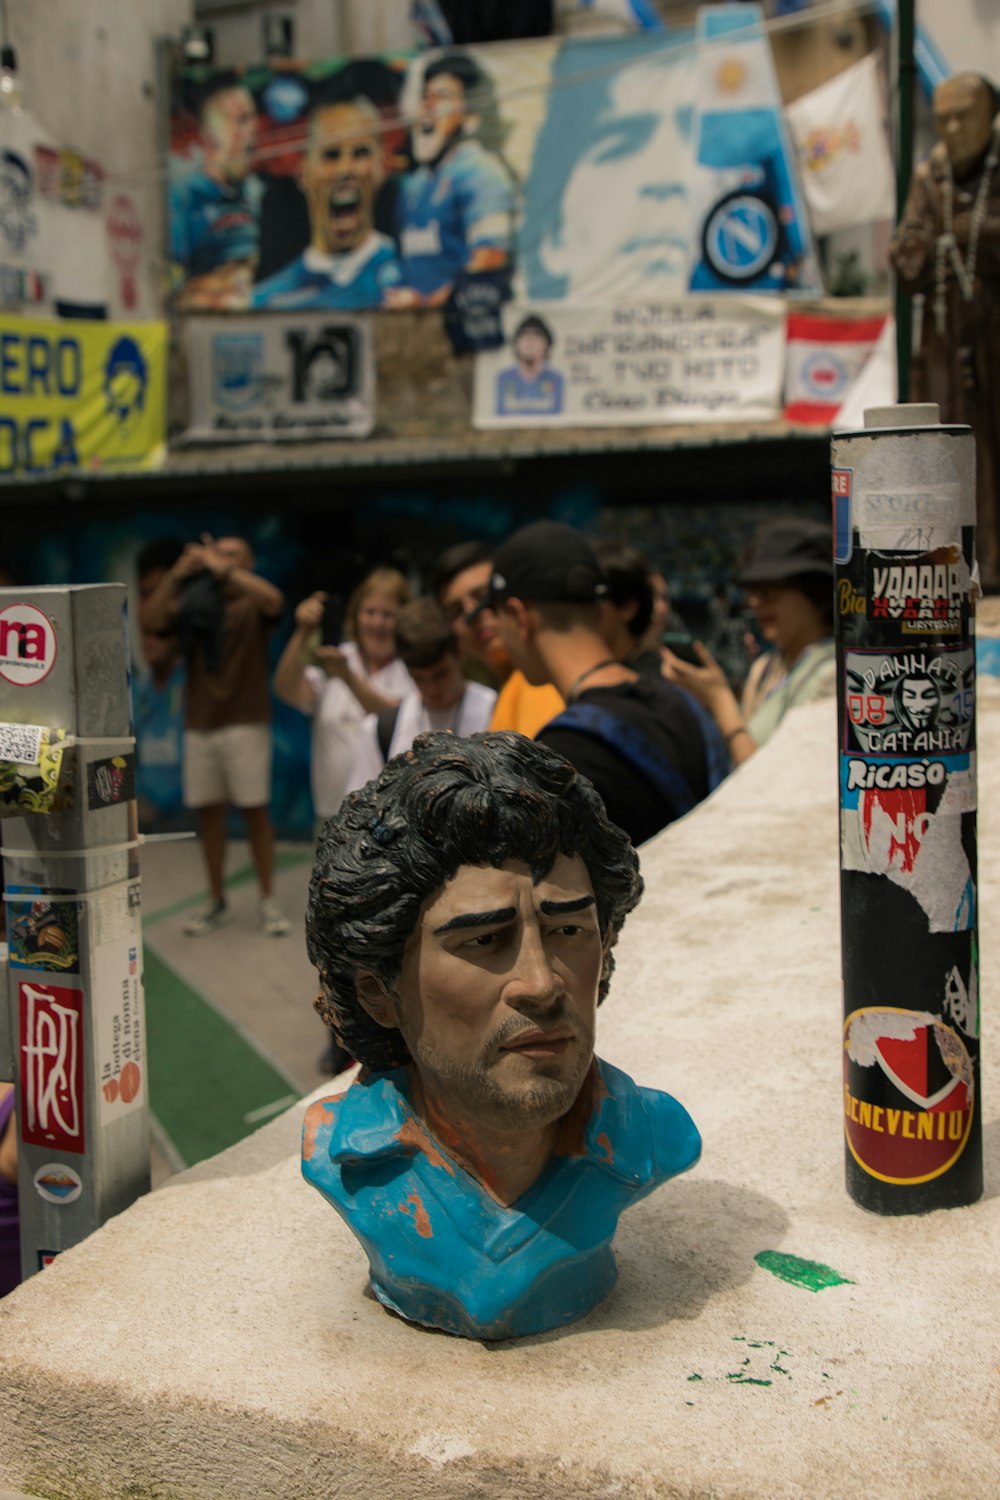 Uma busto de um homem está exposta em uma loja